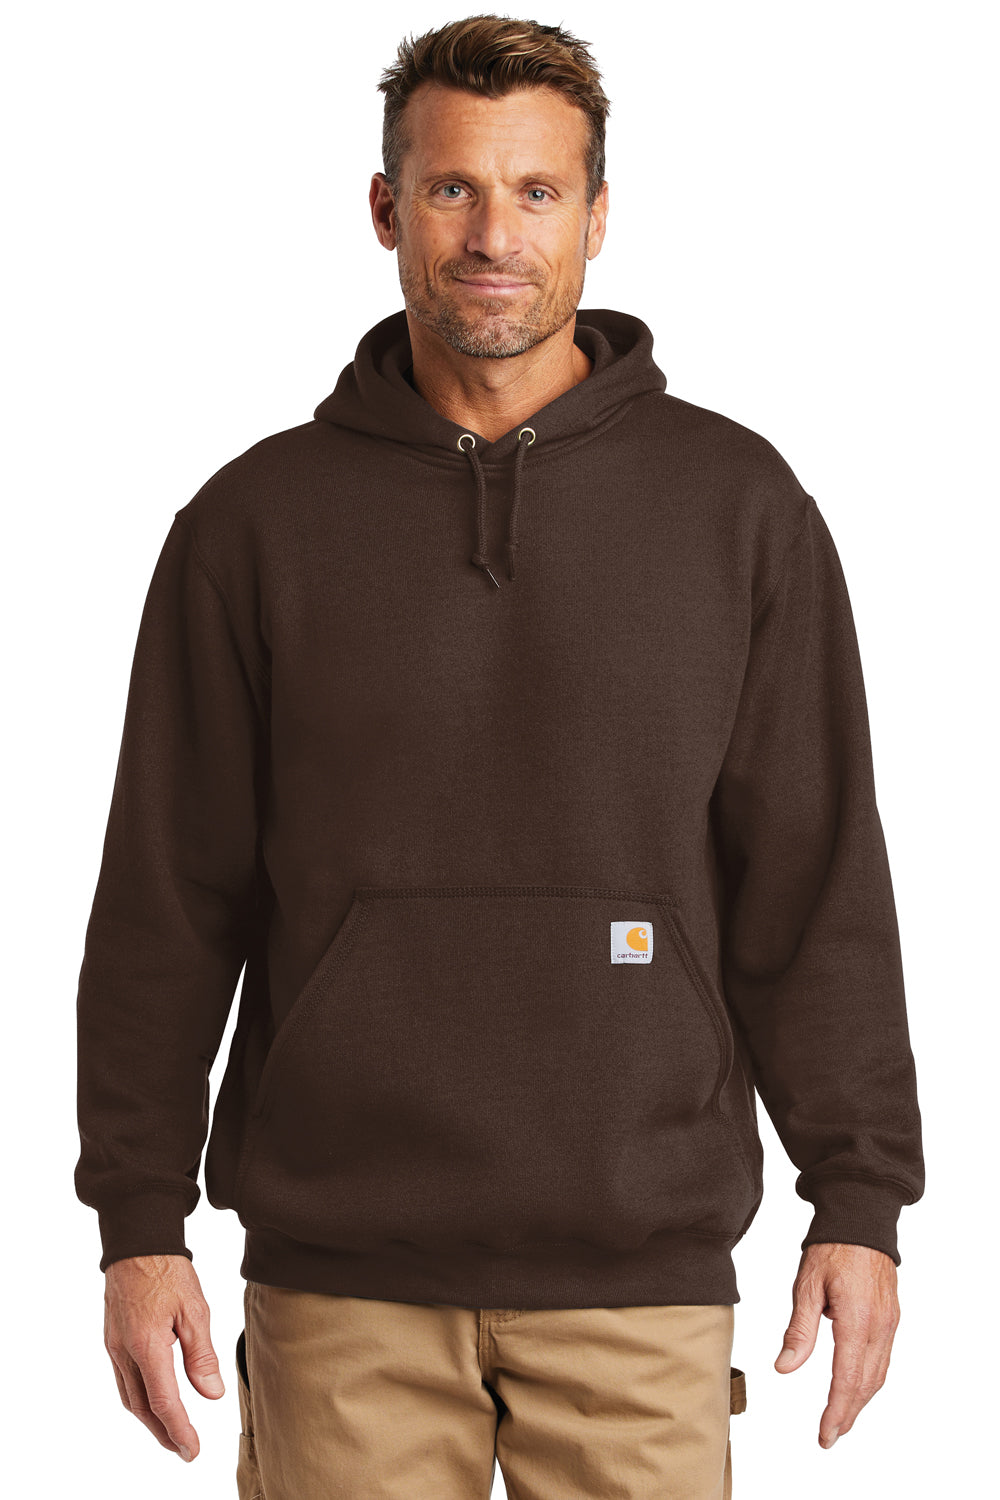 Carhartt CTK121 Mens Hooded Sweatshirt Hoodie Dark Brown Front